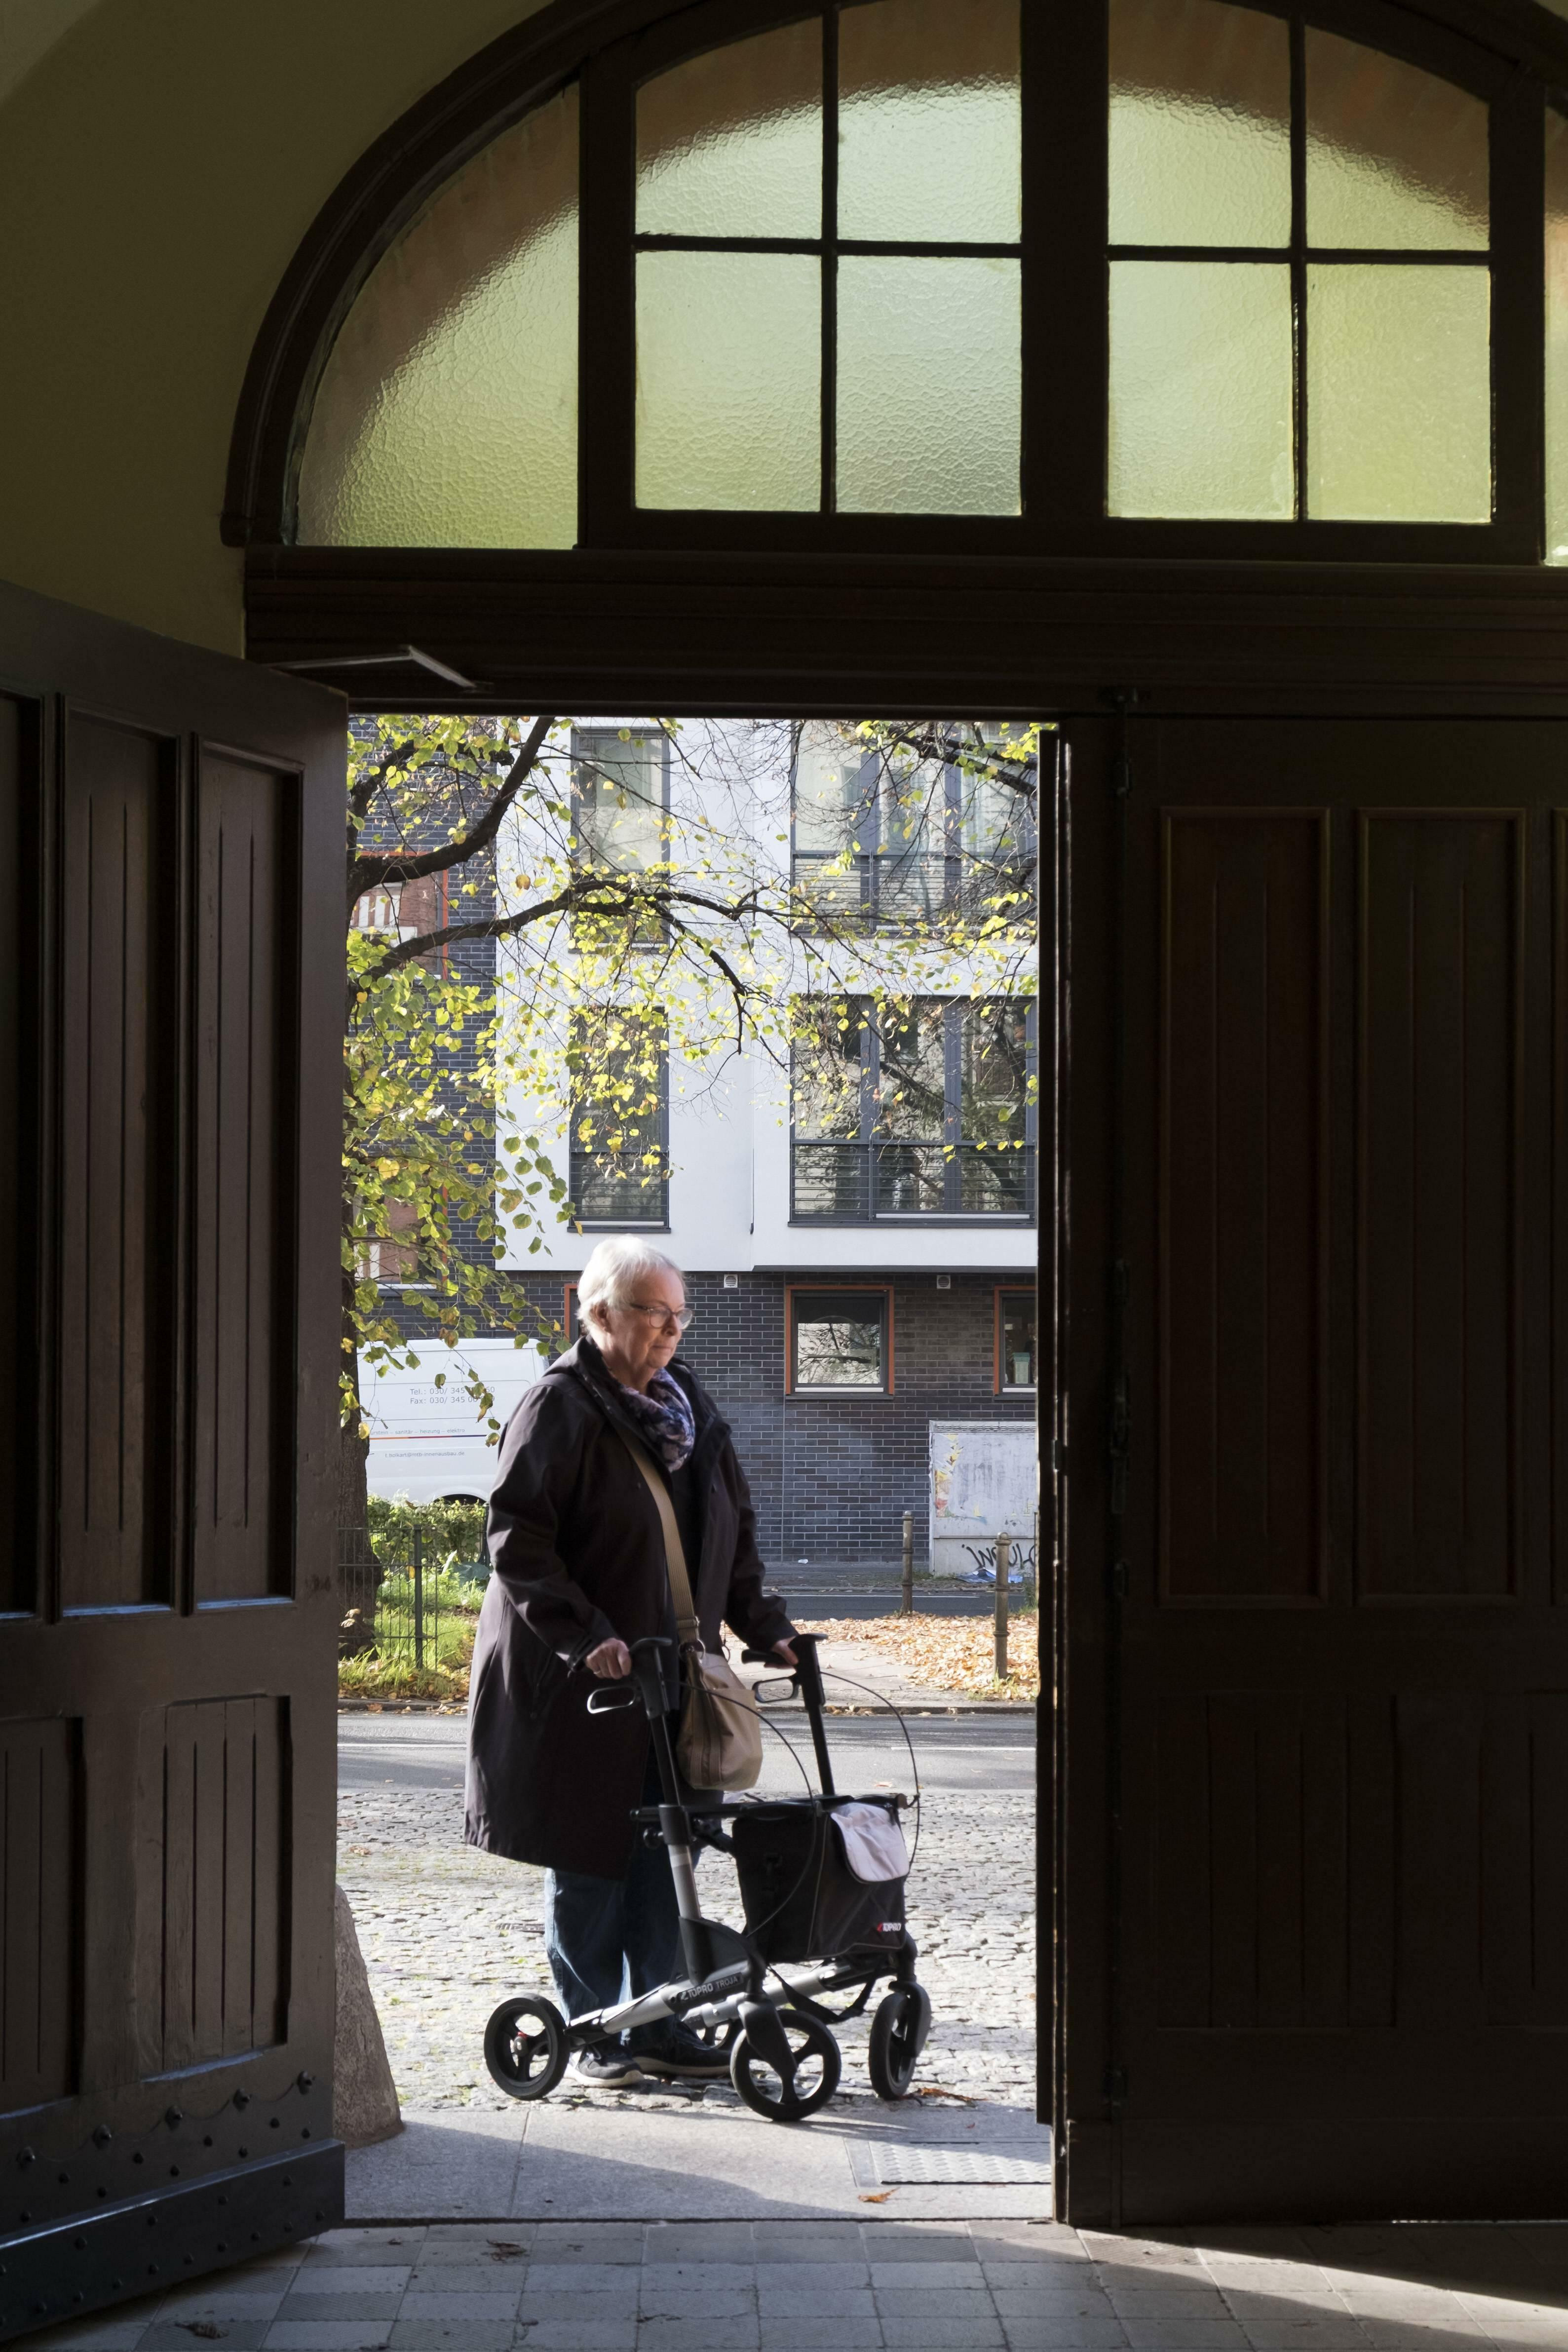 Wohnungen Suchen
 Wohnen im Alter Senioren suchen kleinere Wohnungen